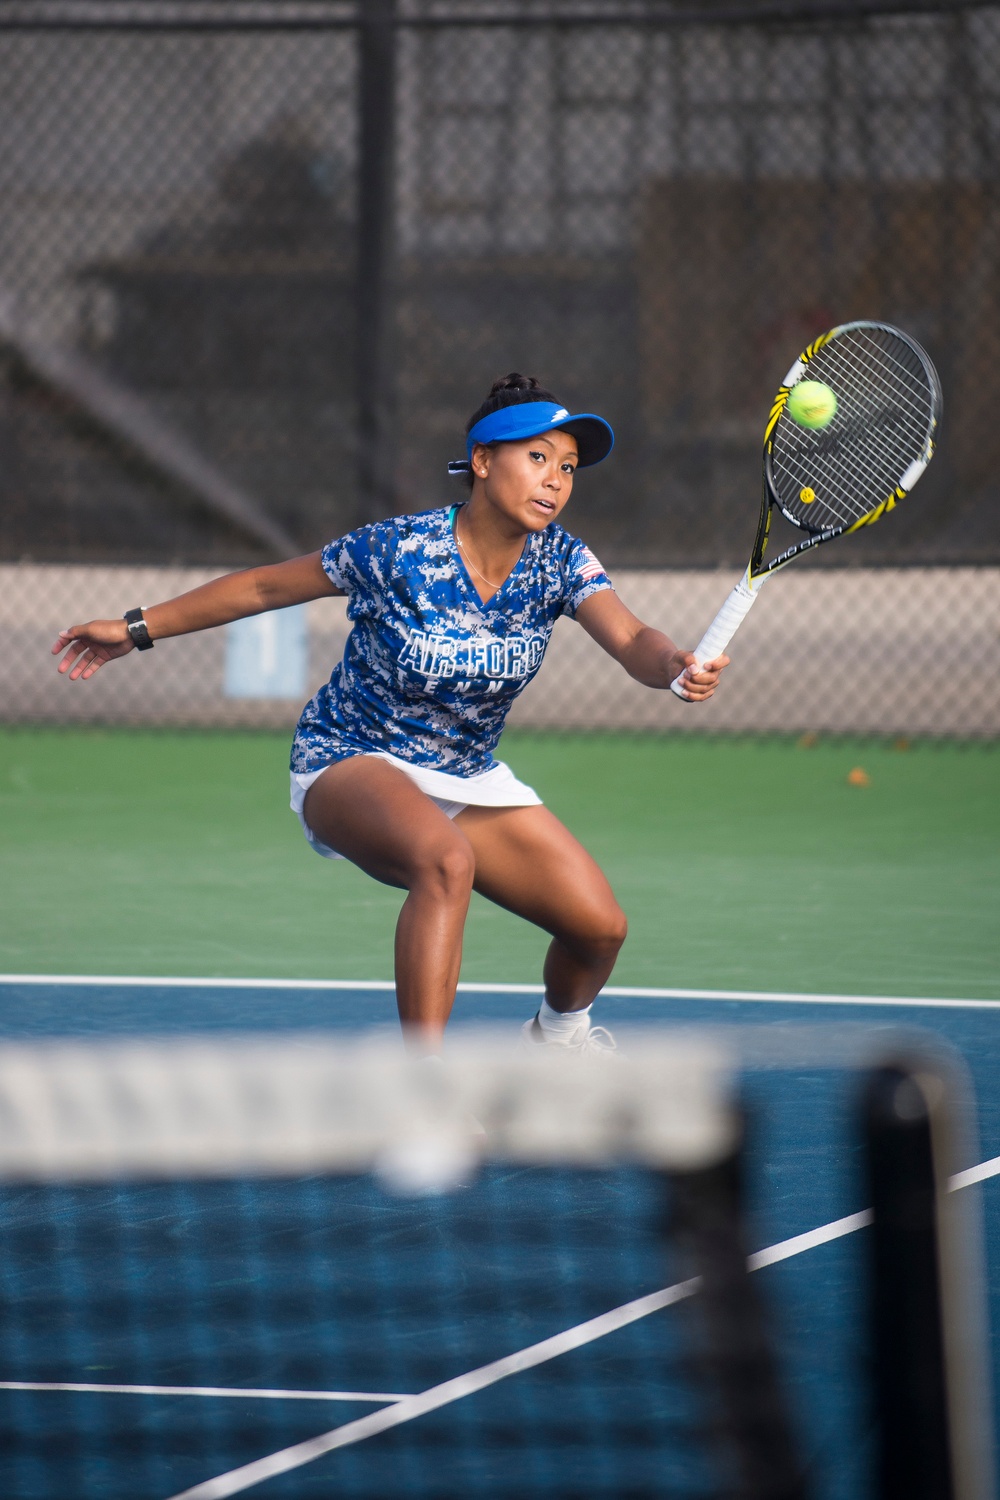 09-30-16 U.S. Air Force Academy Women's Tennis